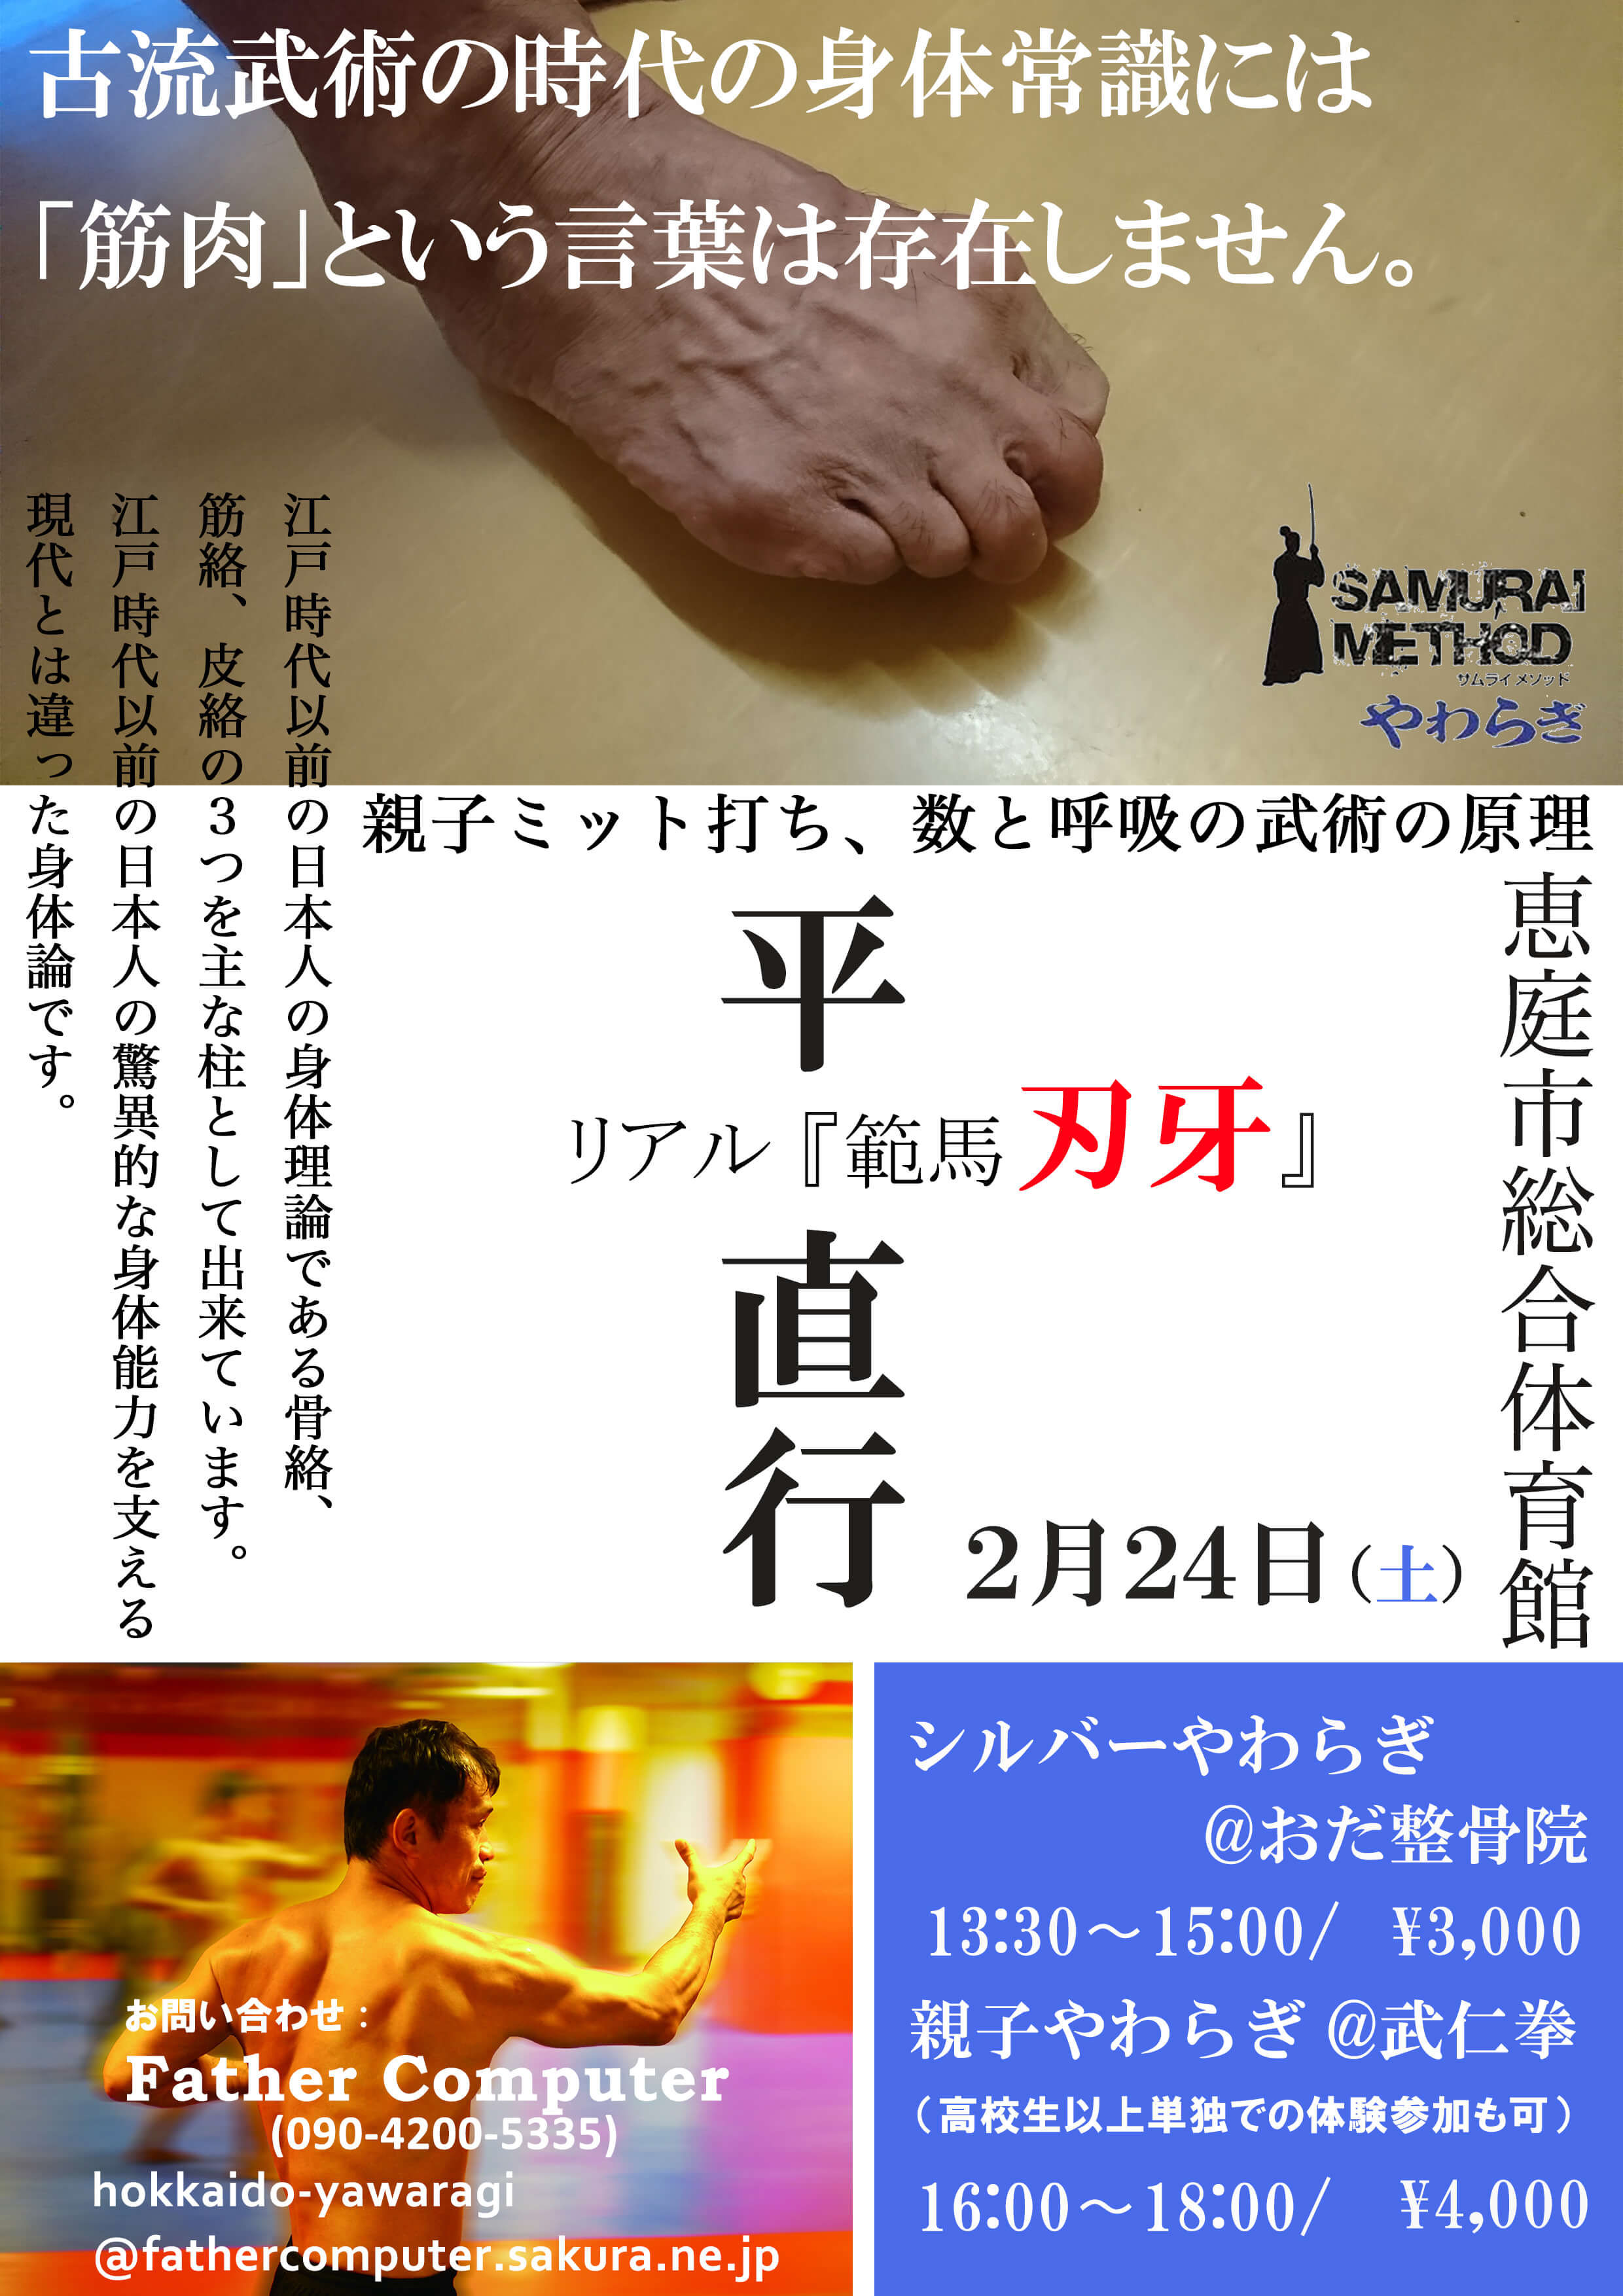 マンガ「刃牙」のモデルとなった平 直行 先生が北海道で再公演 公演ポスター